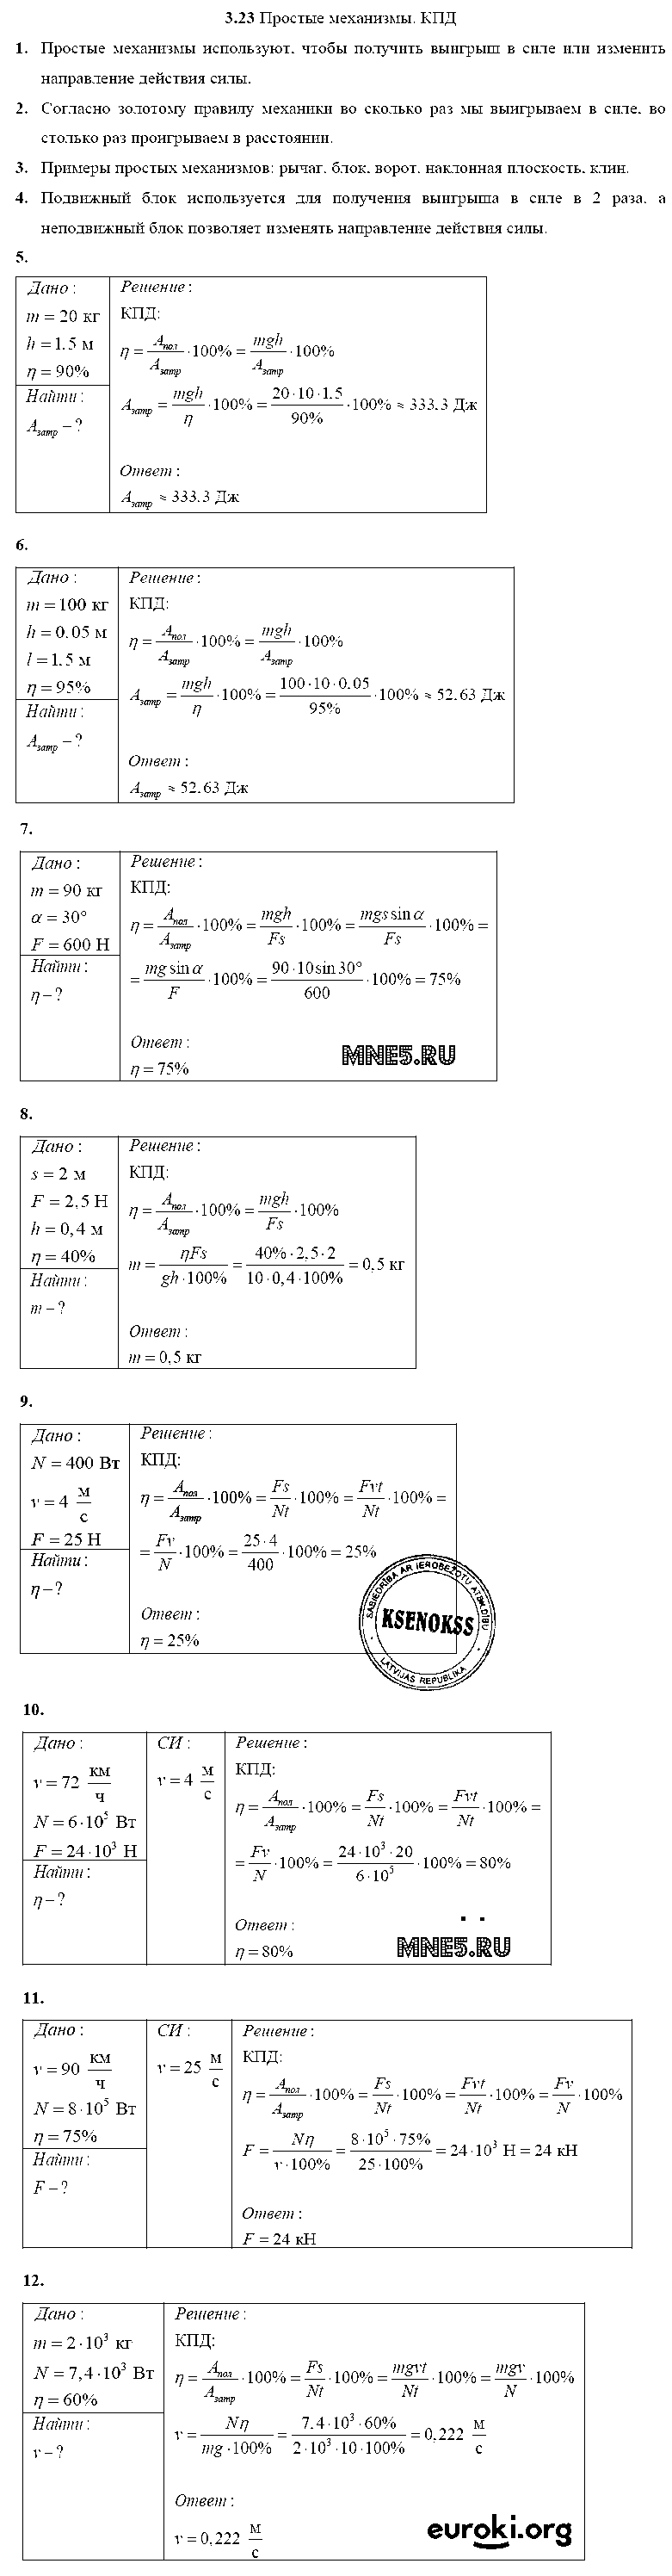 ГДЗ Физика 10 класс - 3.23. Простые механизмы. КПД